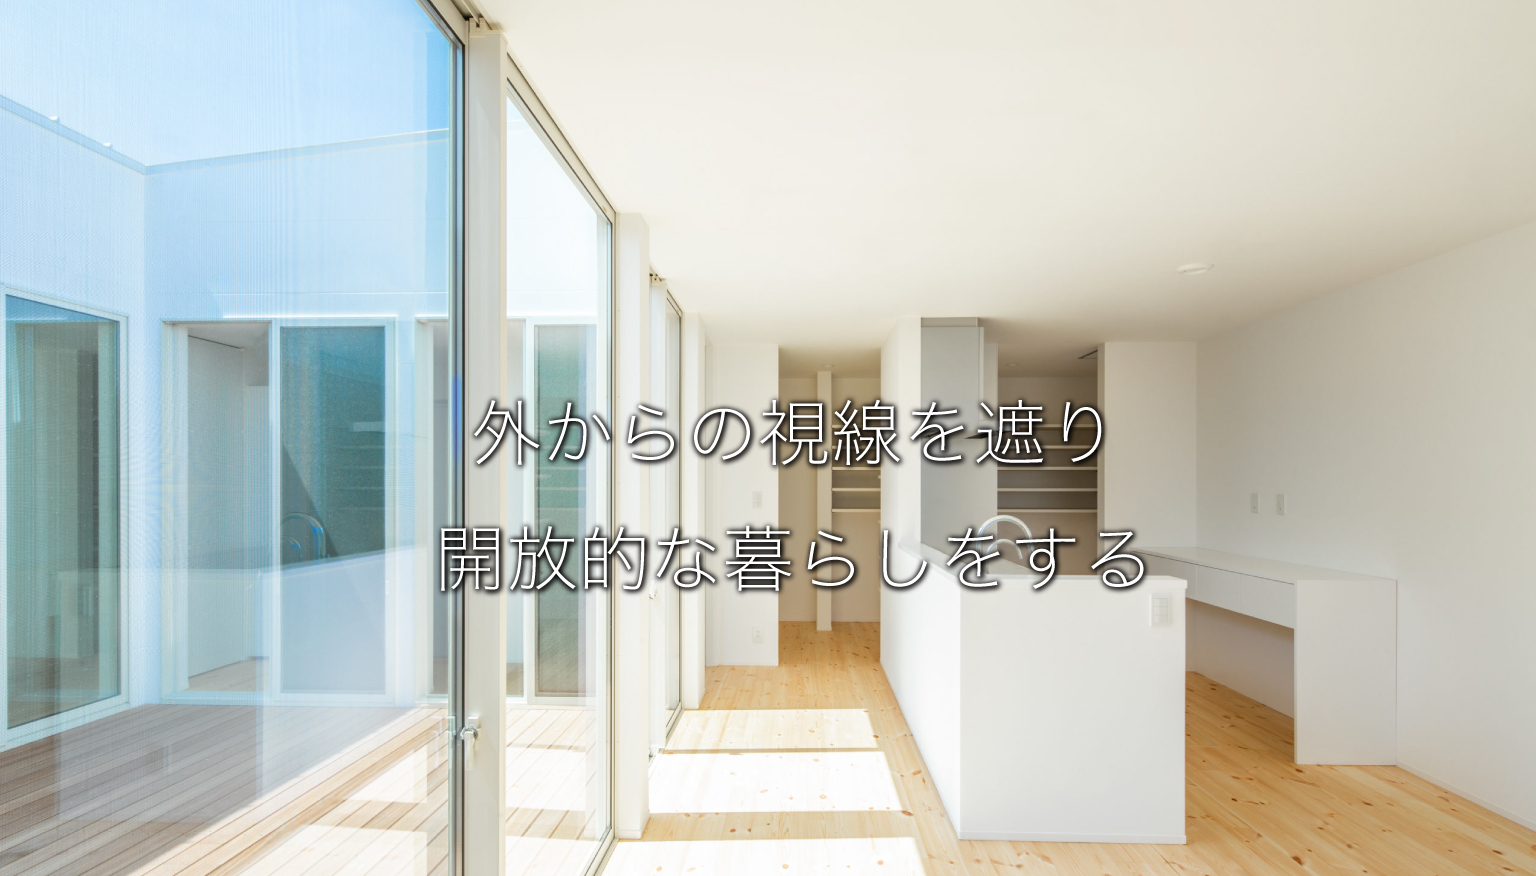 大阪・奈良の窓がなくても明るい平屋ならナカタコーポレーション